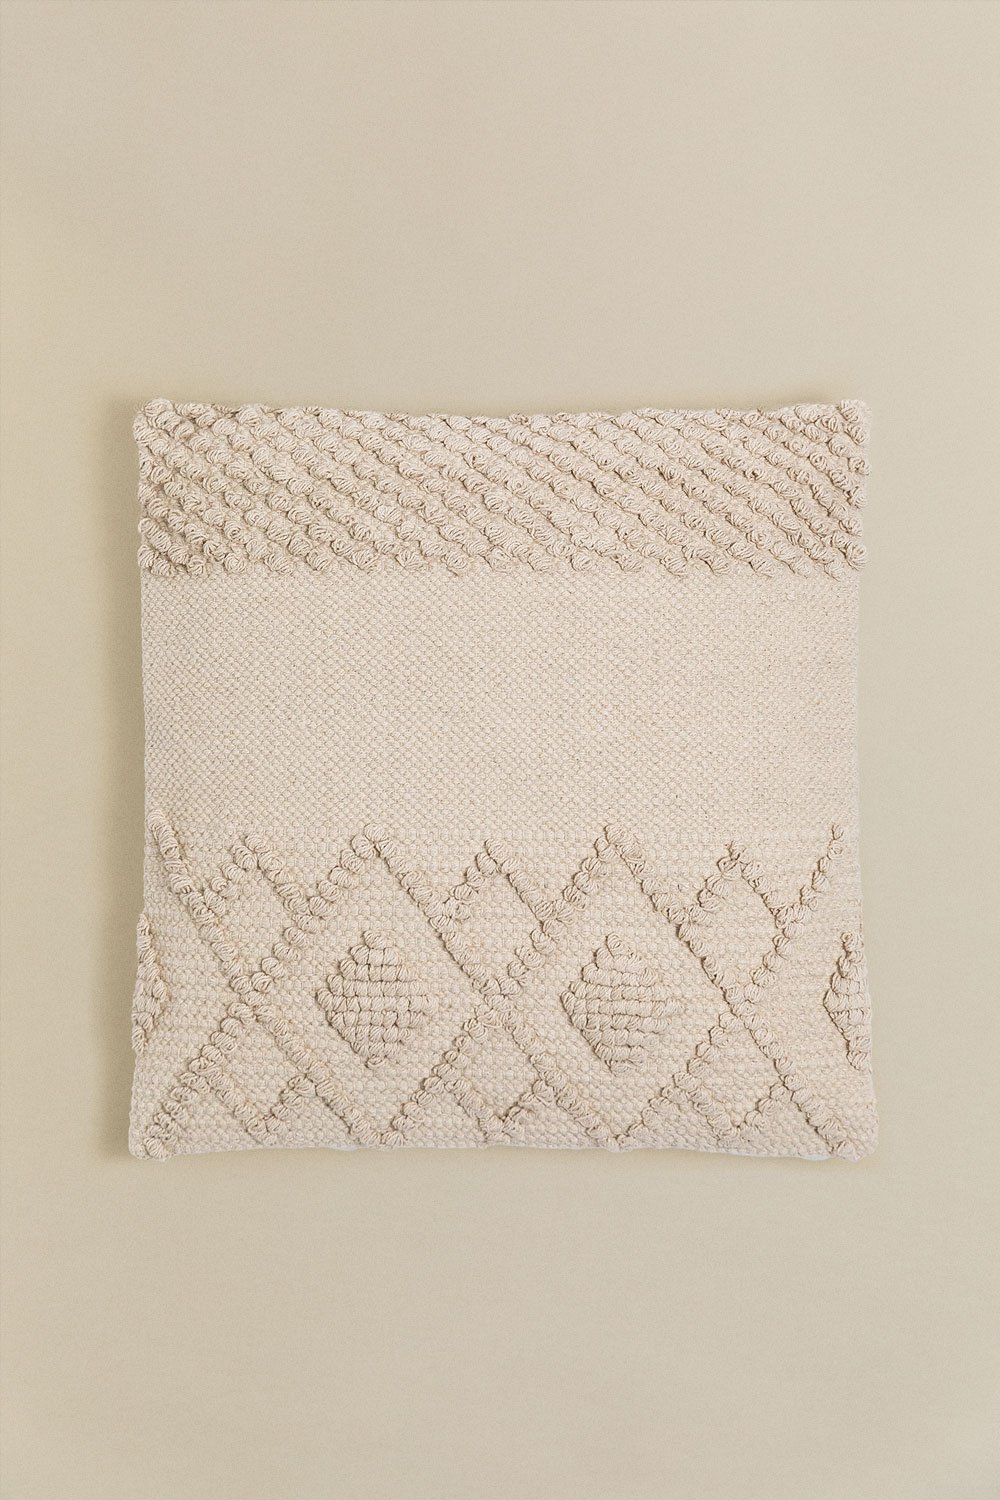 Cuscino quadrato in cotone (50x50 cm) Gubby, immagine della galleria 1